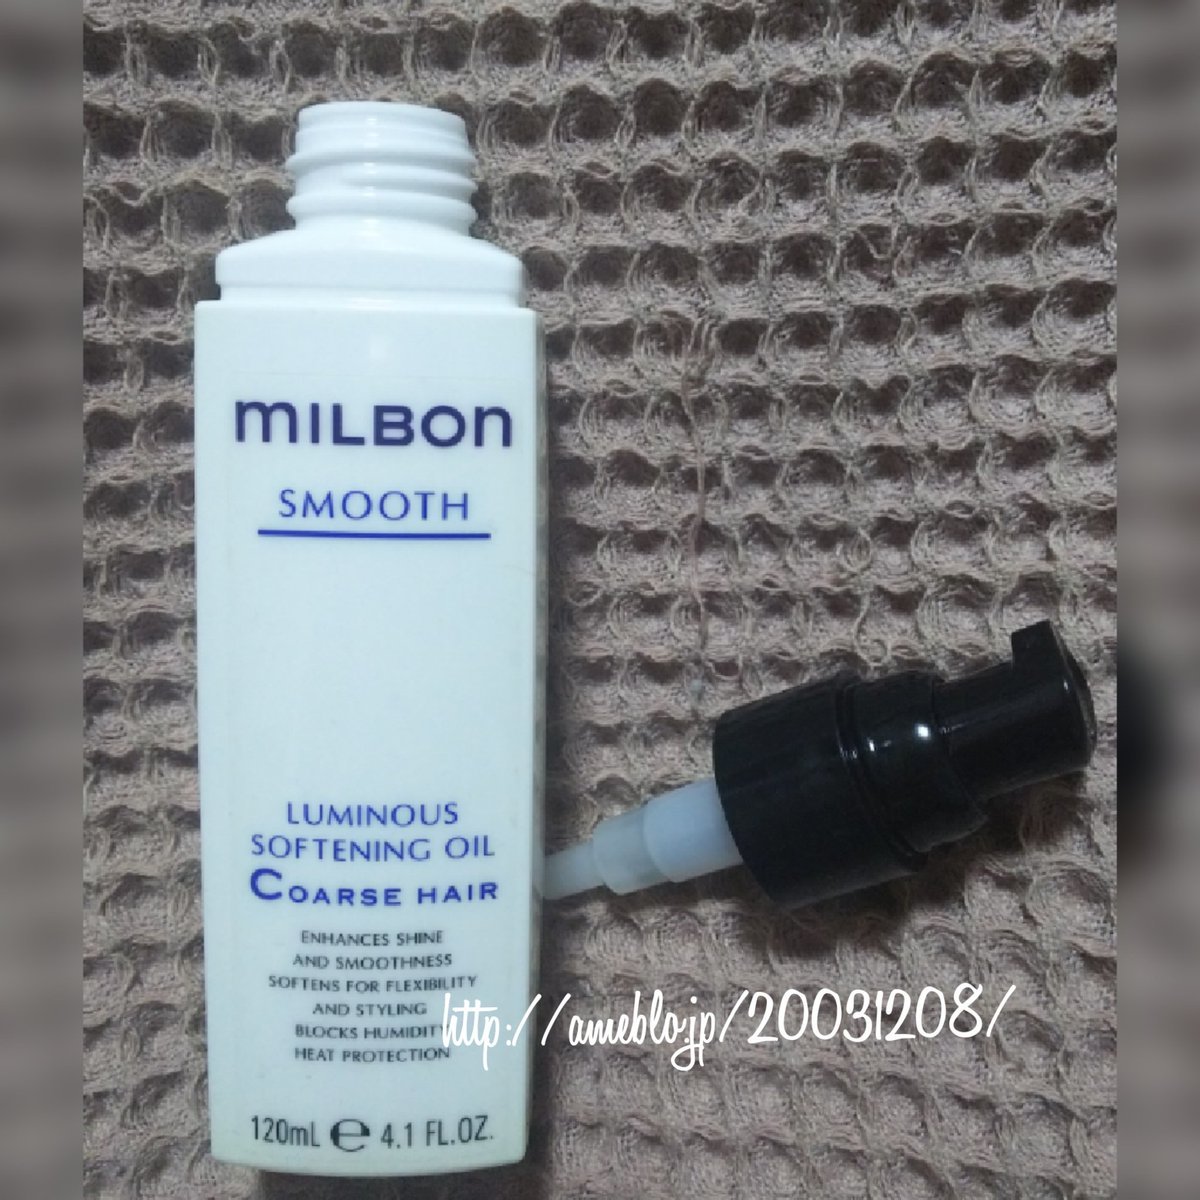 milbon / ルミナス ソフトニング オイル Coarse hairの公式商品情報